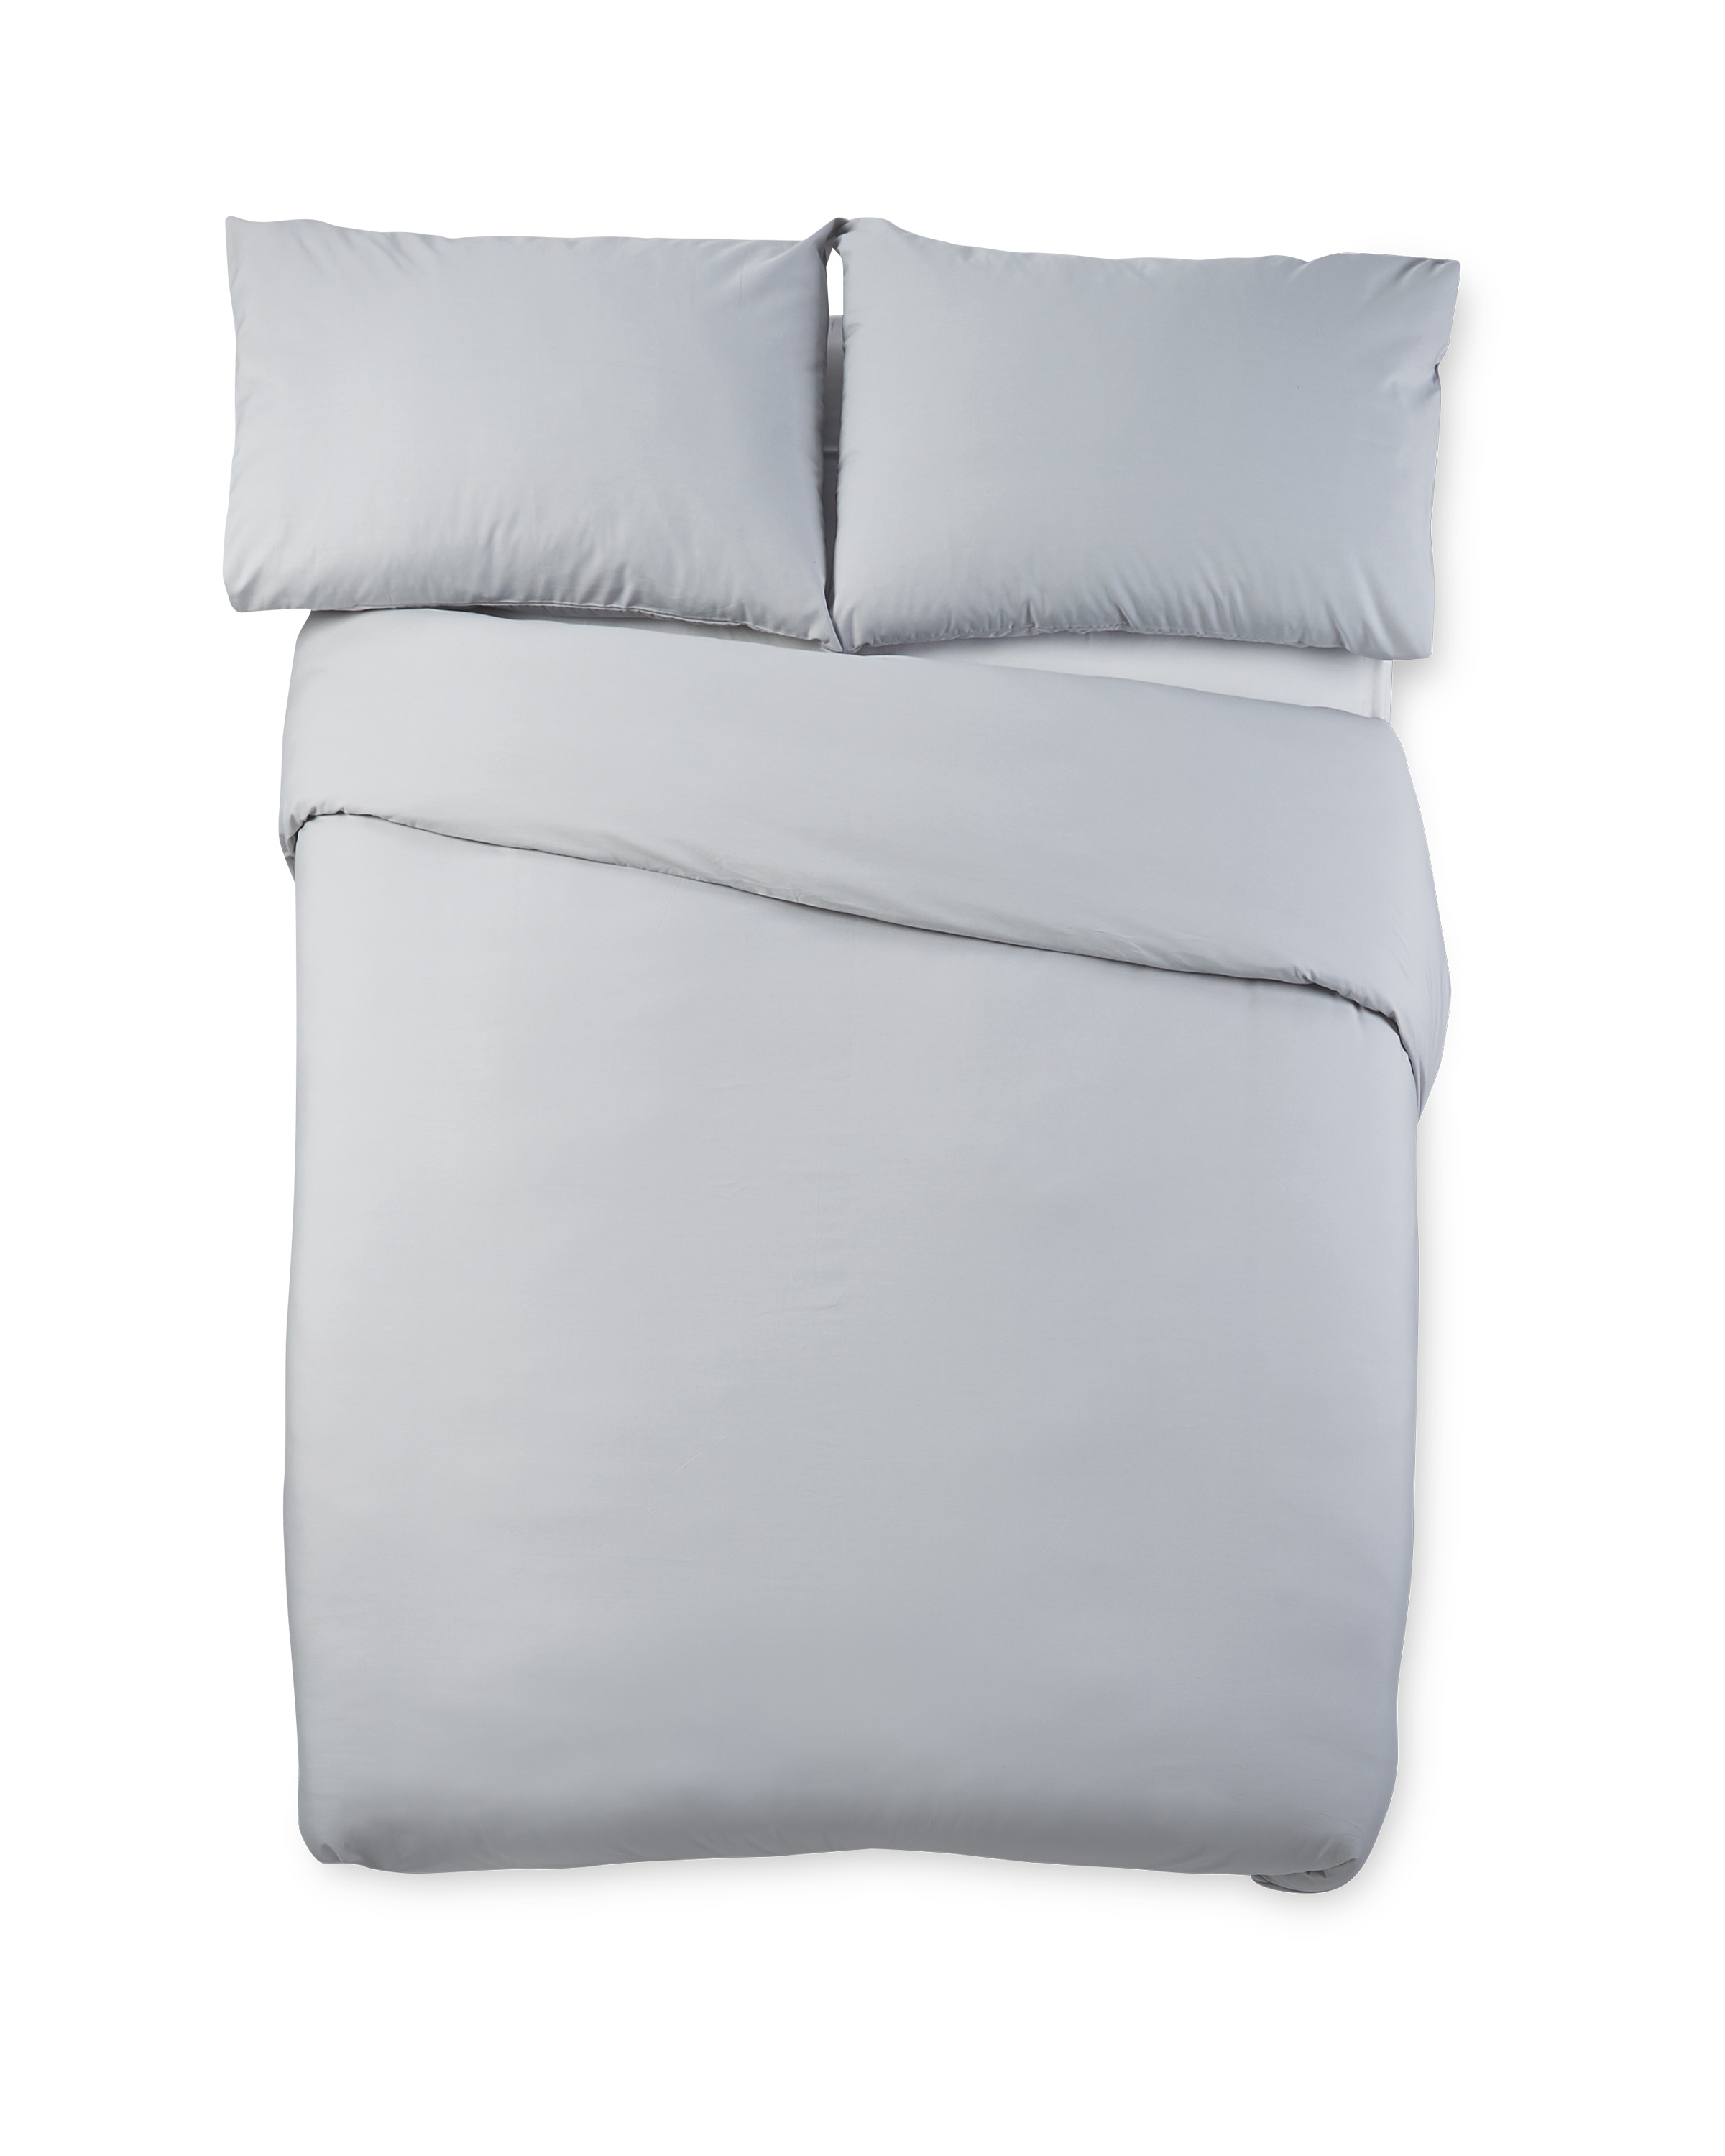 Grey Cooling Super King Duvet Set Aldi Uk, Grey Super King Bed Linen